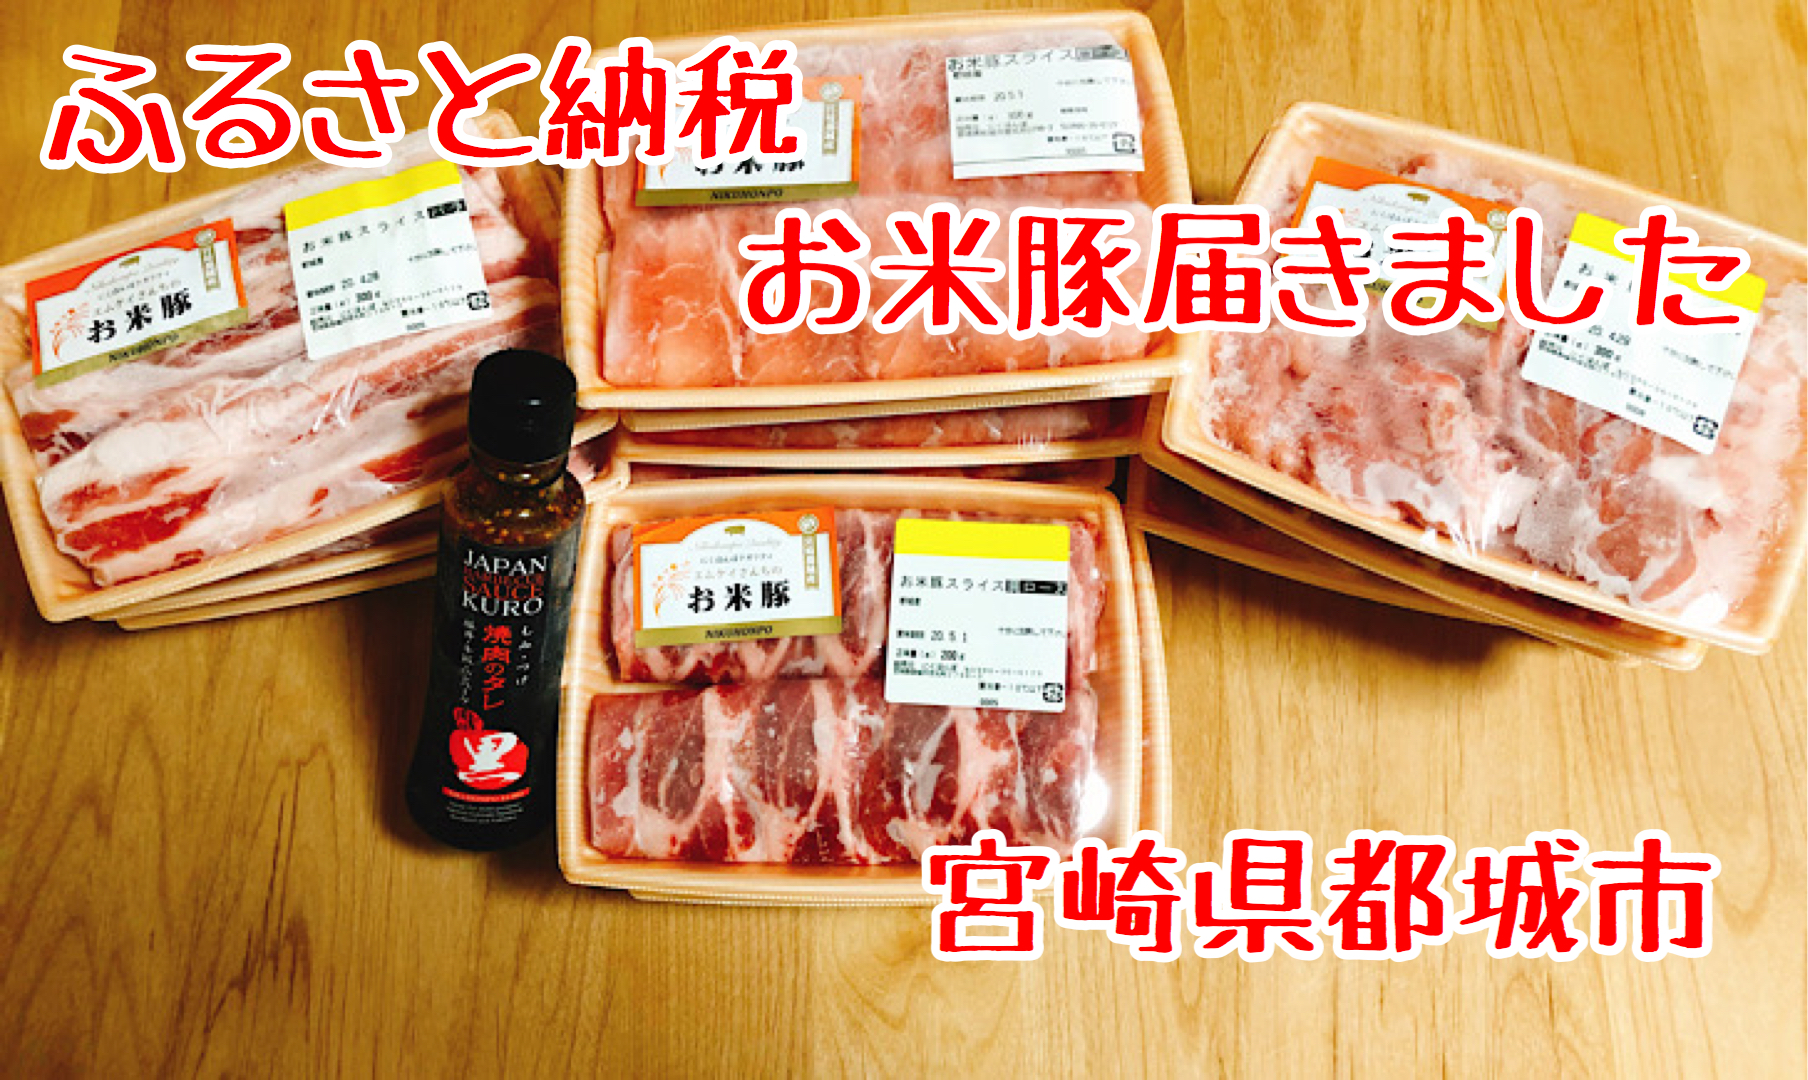 【返礼品レポ#1】宮崎県都城市-都城産「お米豚」ときめき3.7kgセット（黒たれつき）-ふるさと納税レビュー | ためぶろぐ。